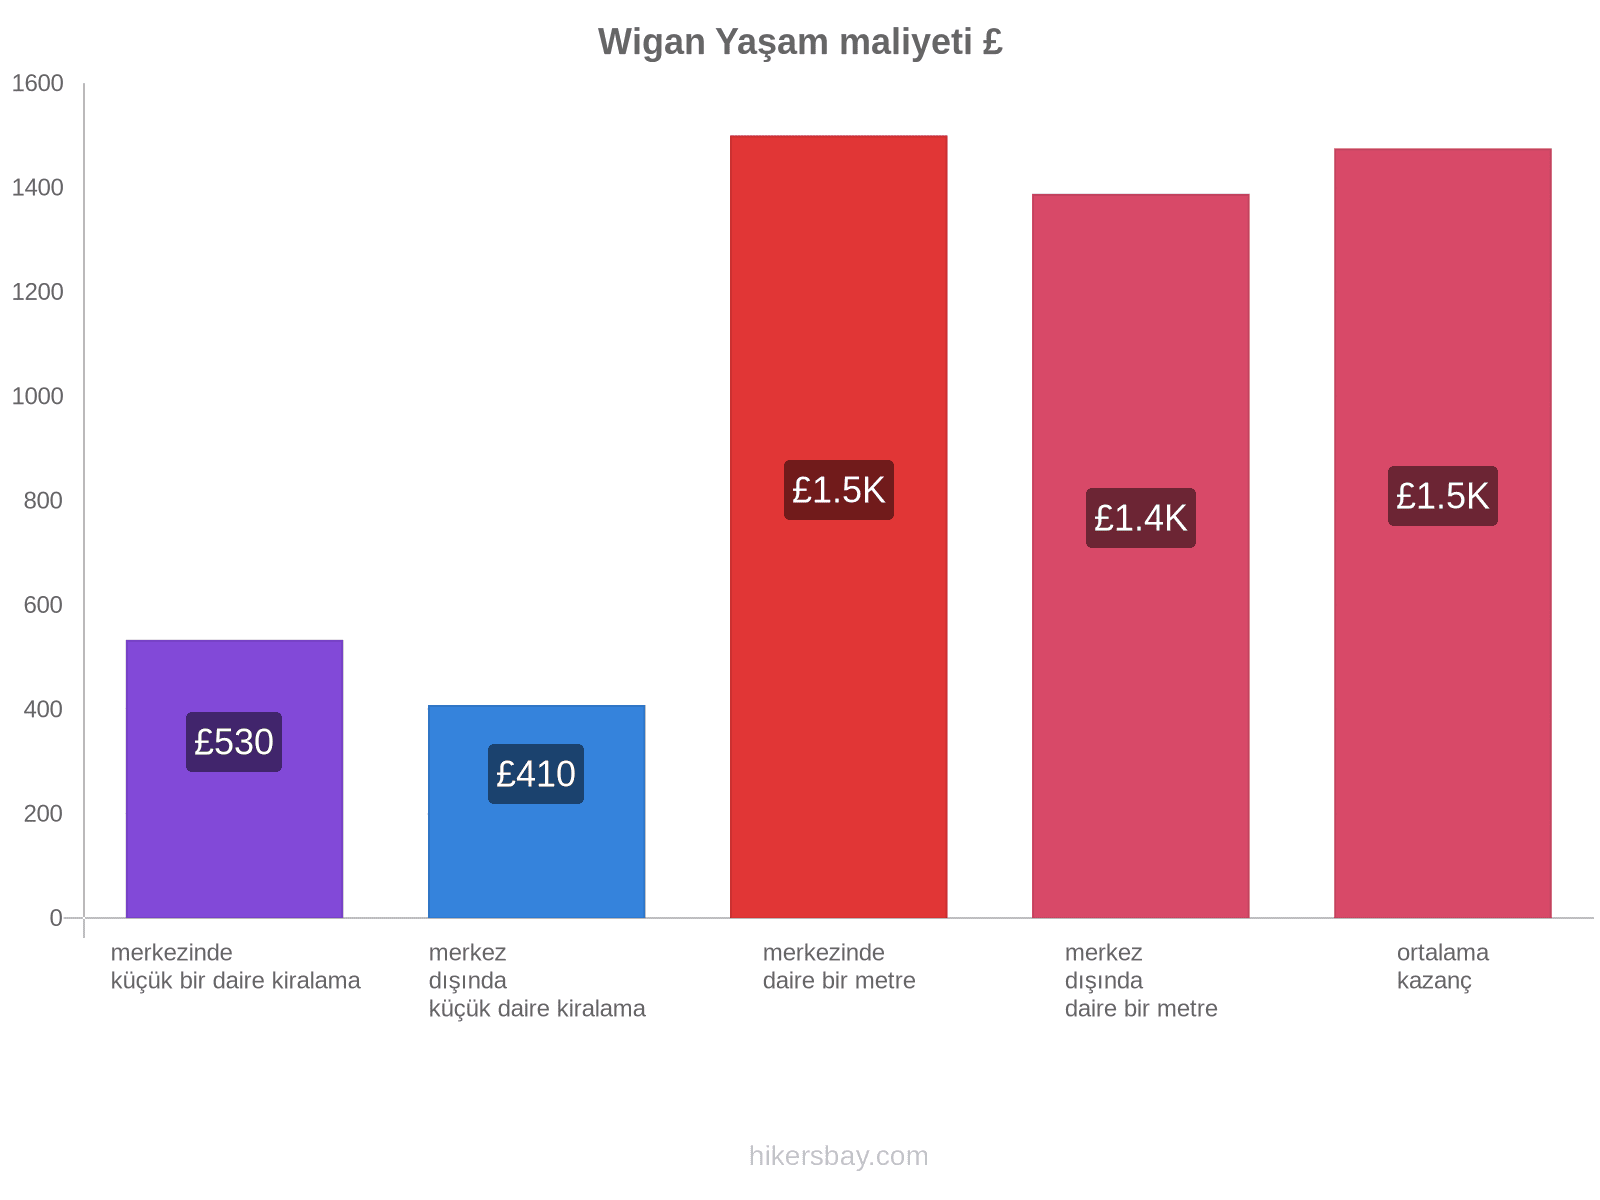 Wigan yaşam maliyeti hikersbay.com